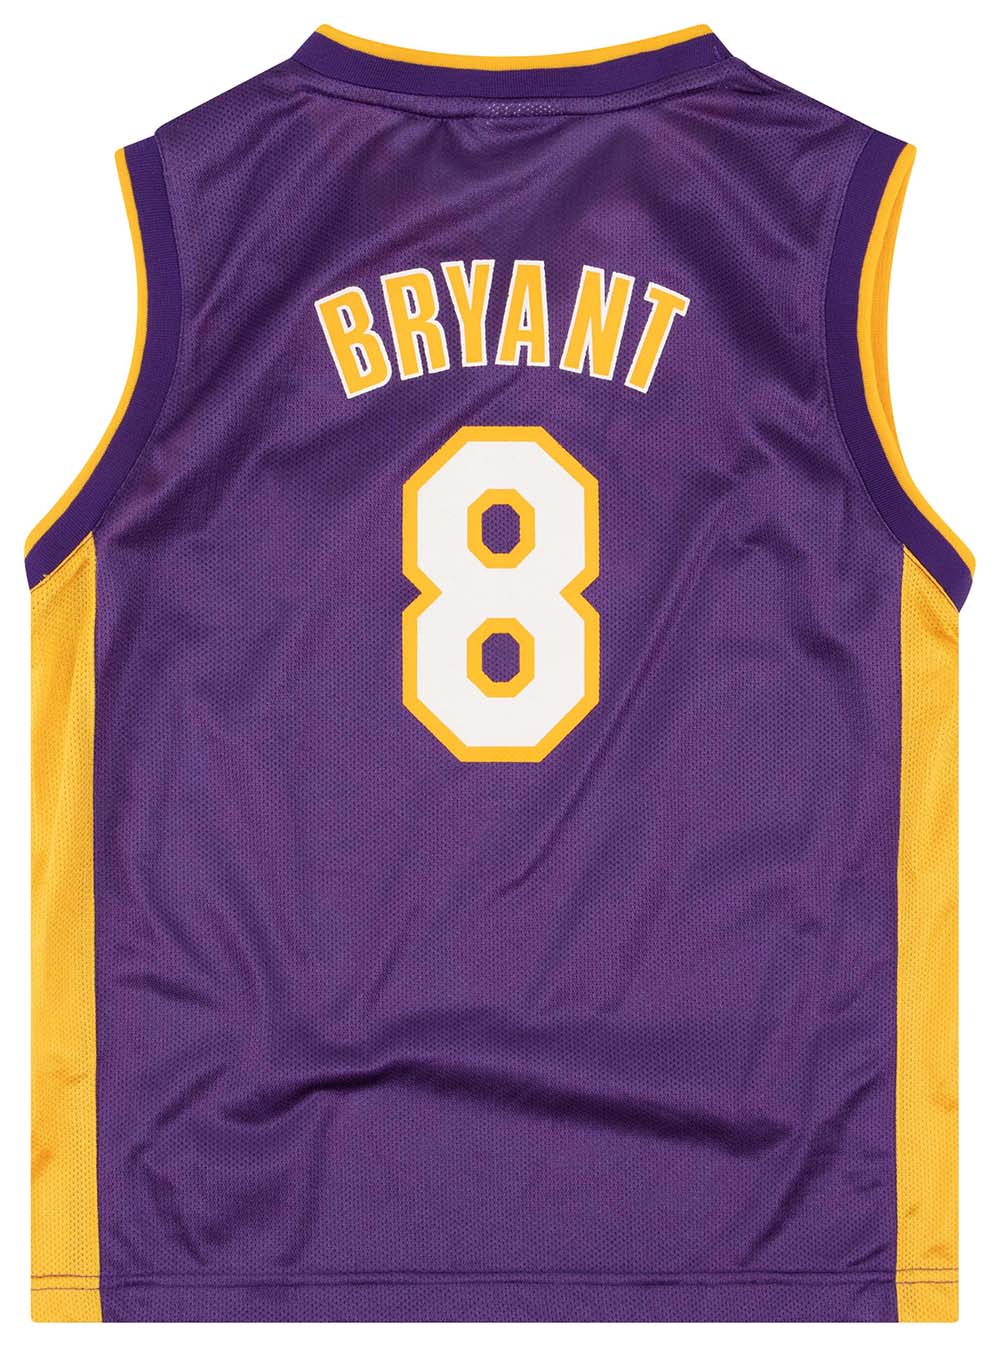 Vintage Reebok Kobe Bryant Los Angeles Lakers #8 Black Alternate